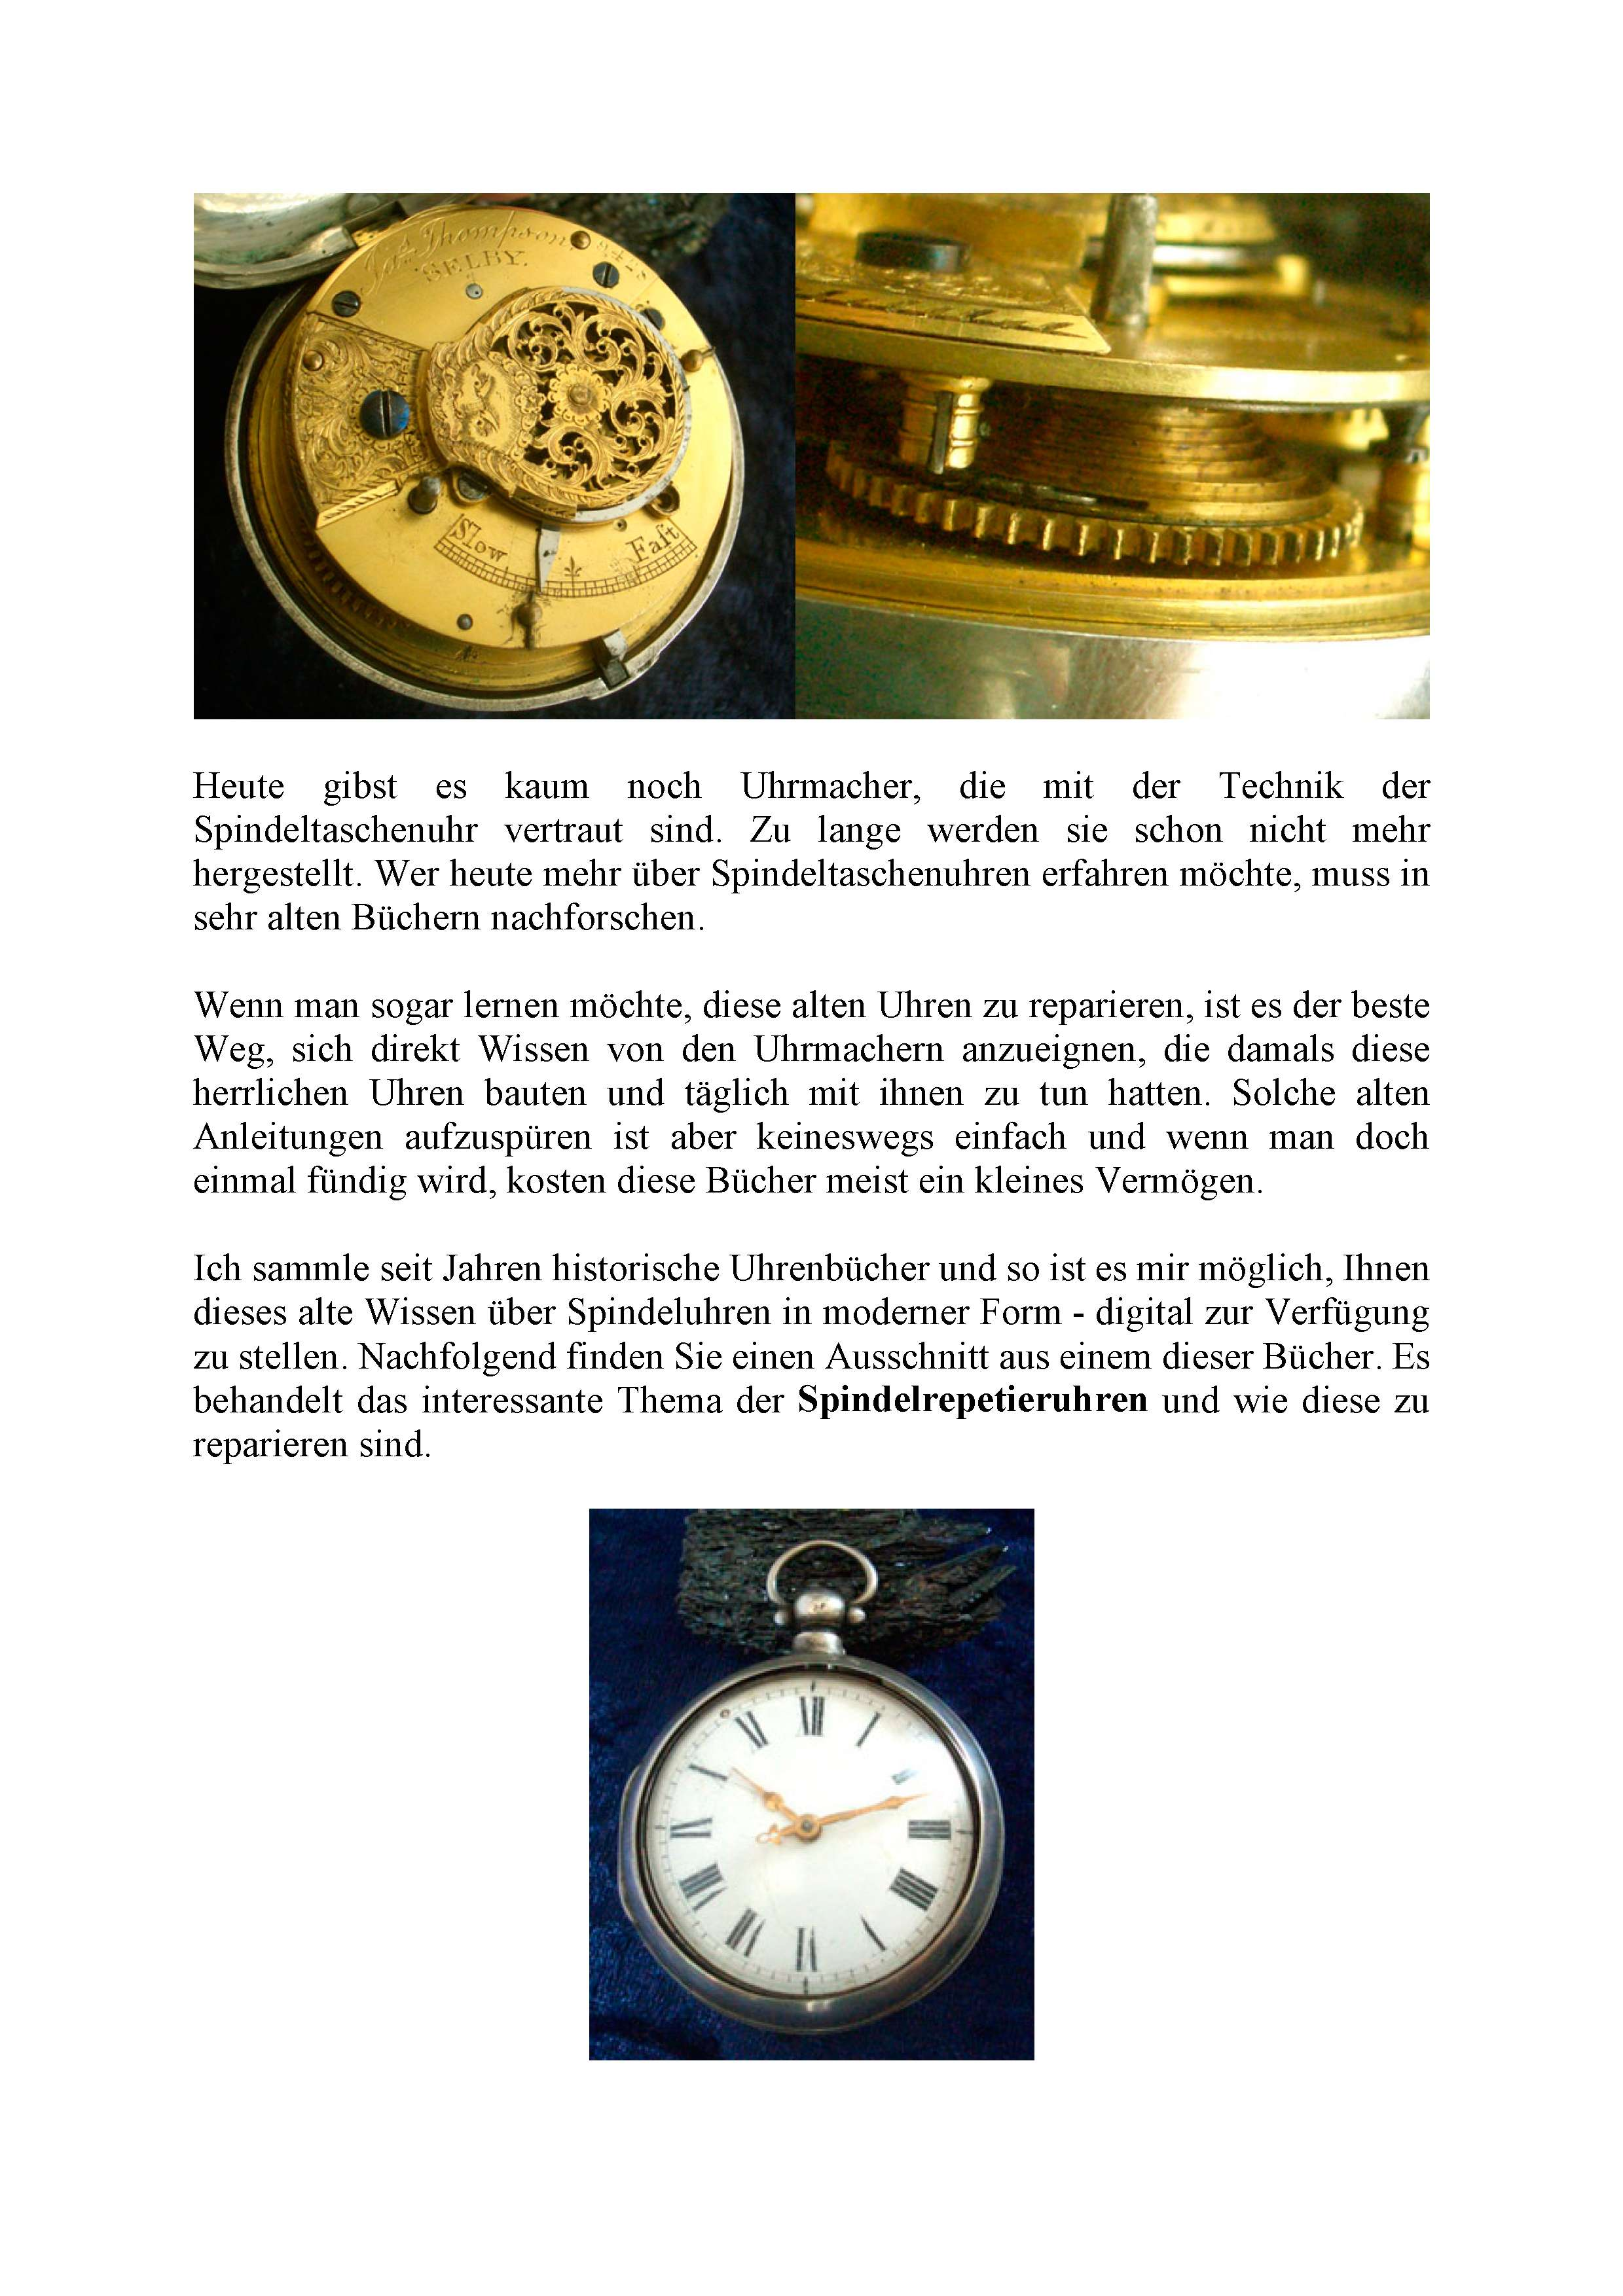 Heute gibst es kaum noch Uhrmacher, die mit der Technik der Spindeltaschenuhr vertraut sind. Zu lange werden sie schon nicht mehr hergestellt.